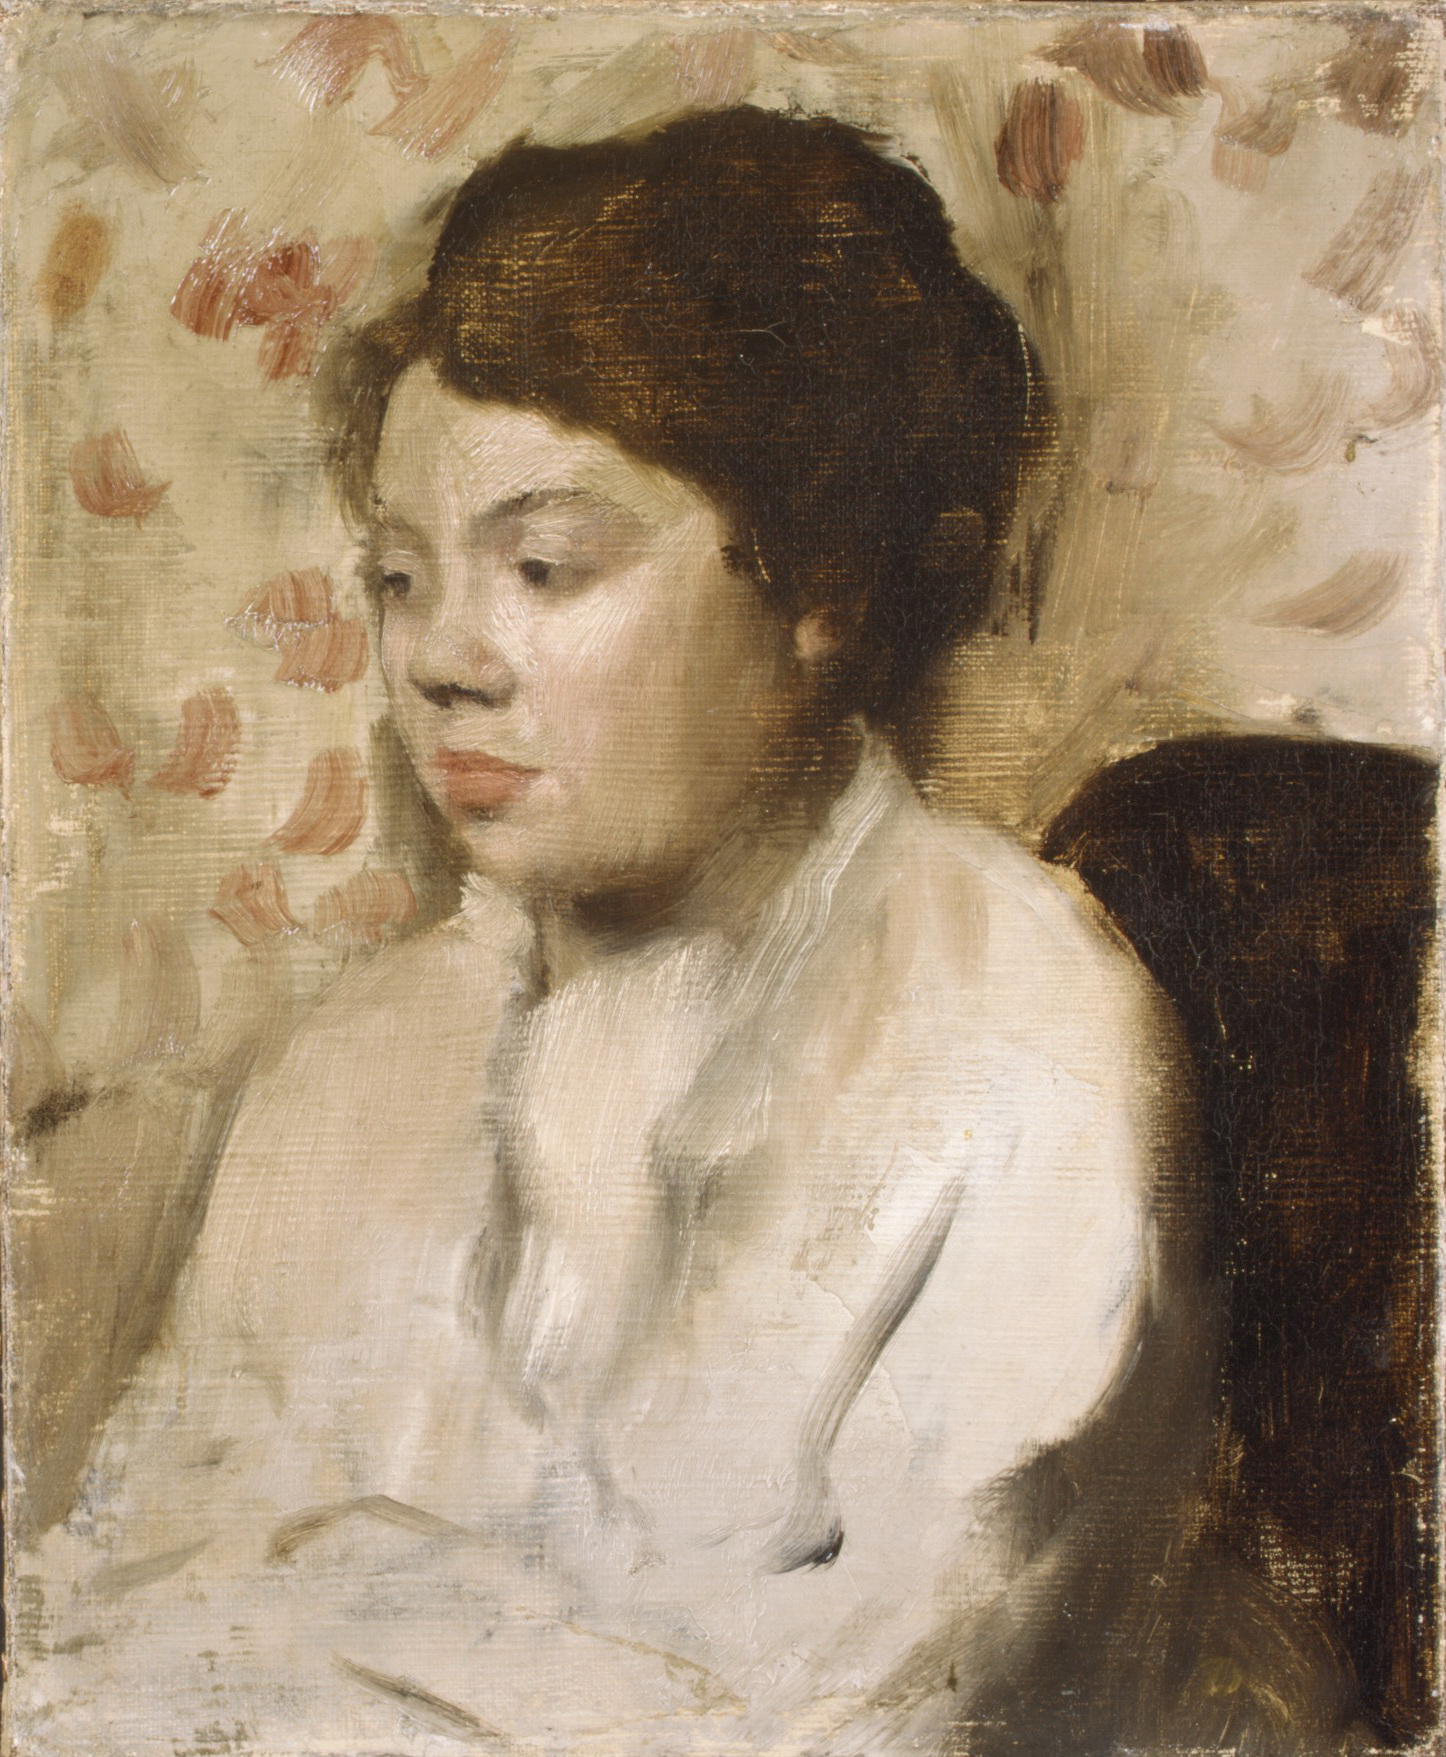 Эдгар Дега. "Портрет молодой женщины". Около 1885.